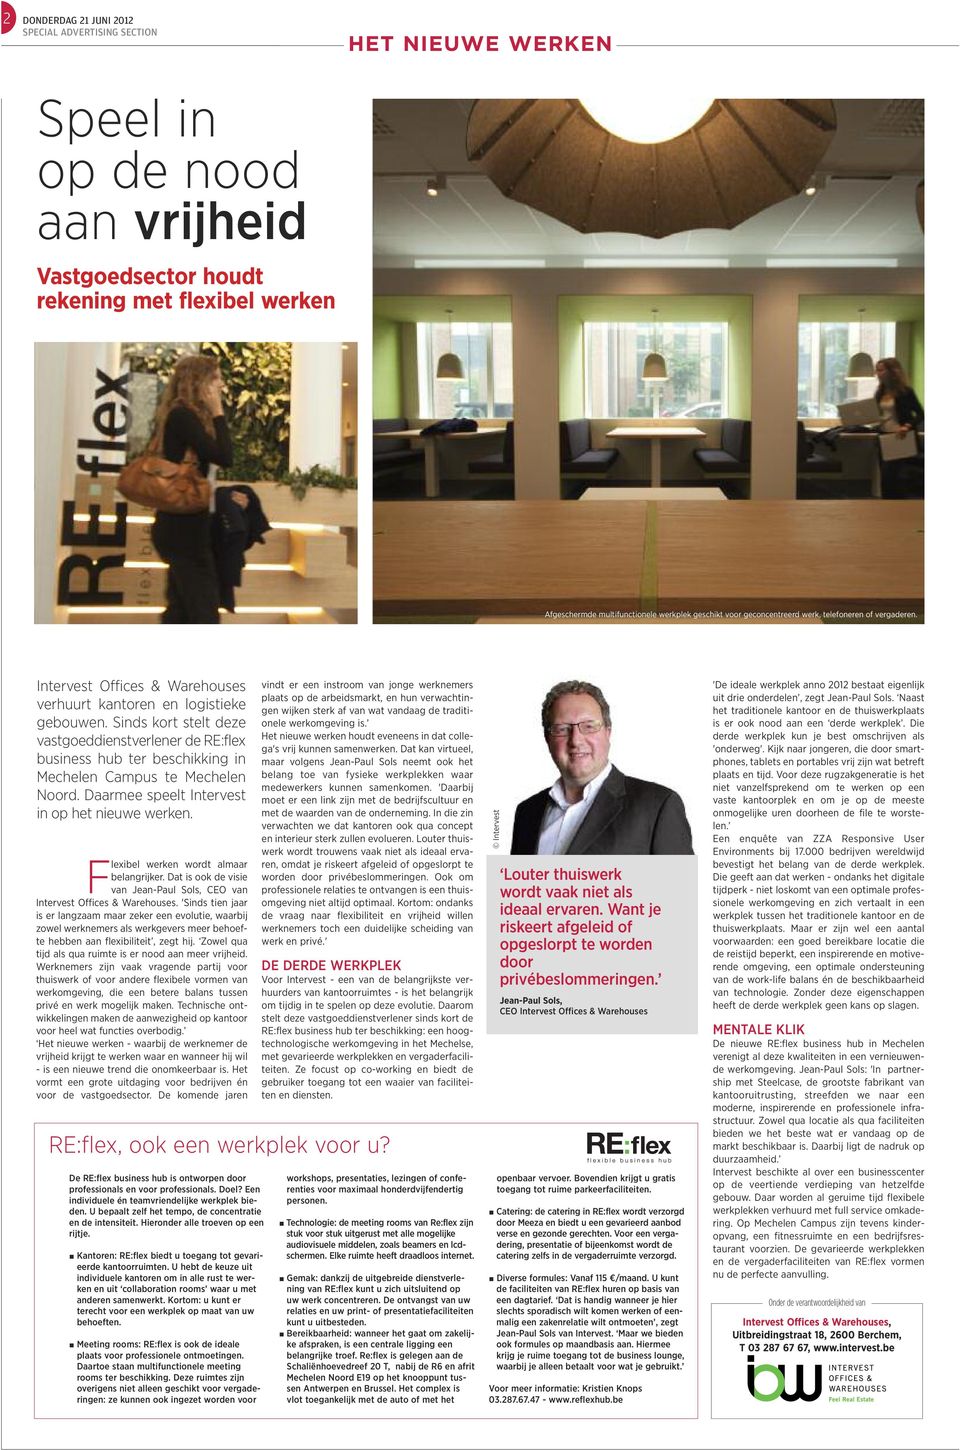 Sinds kort stelt deze vastgoeddienstverlener de RE:flex business hub ter beschikking in Mechelen Campus te Mechelen Noord. Daarmee speelt Intervest in op het nieuwe werken.